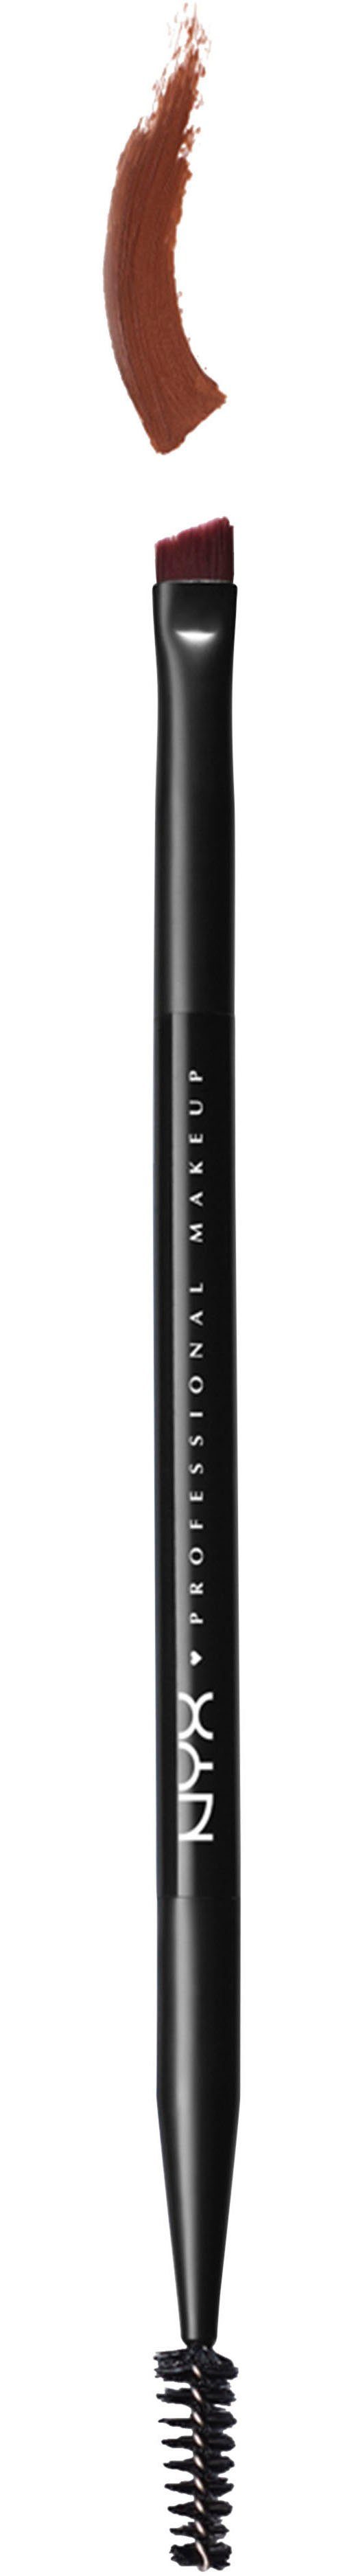 NYX Augenbrauen-Stift | Augenbrauen